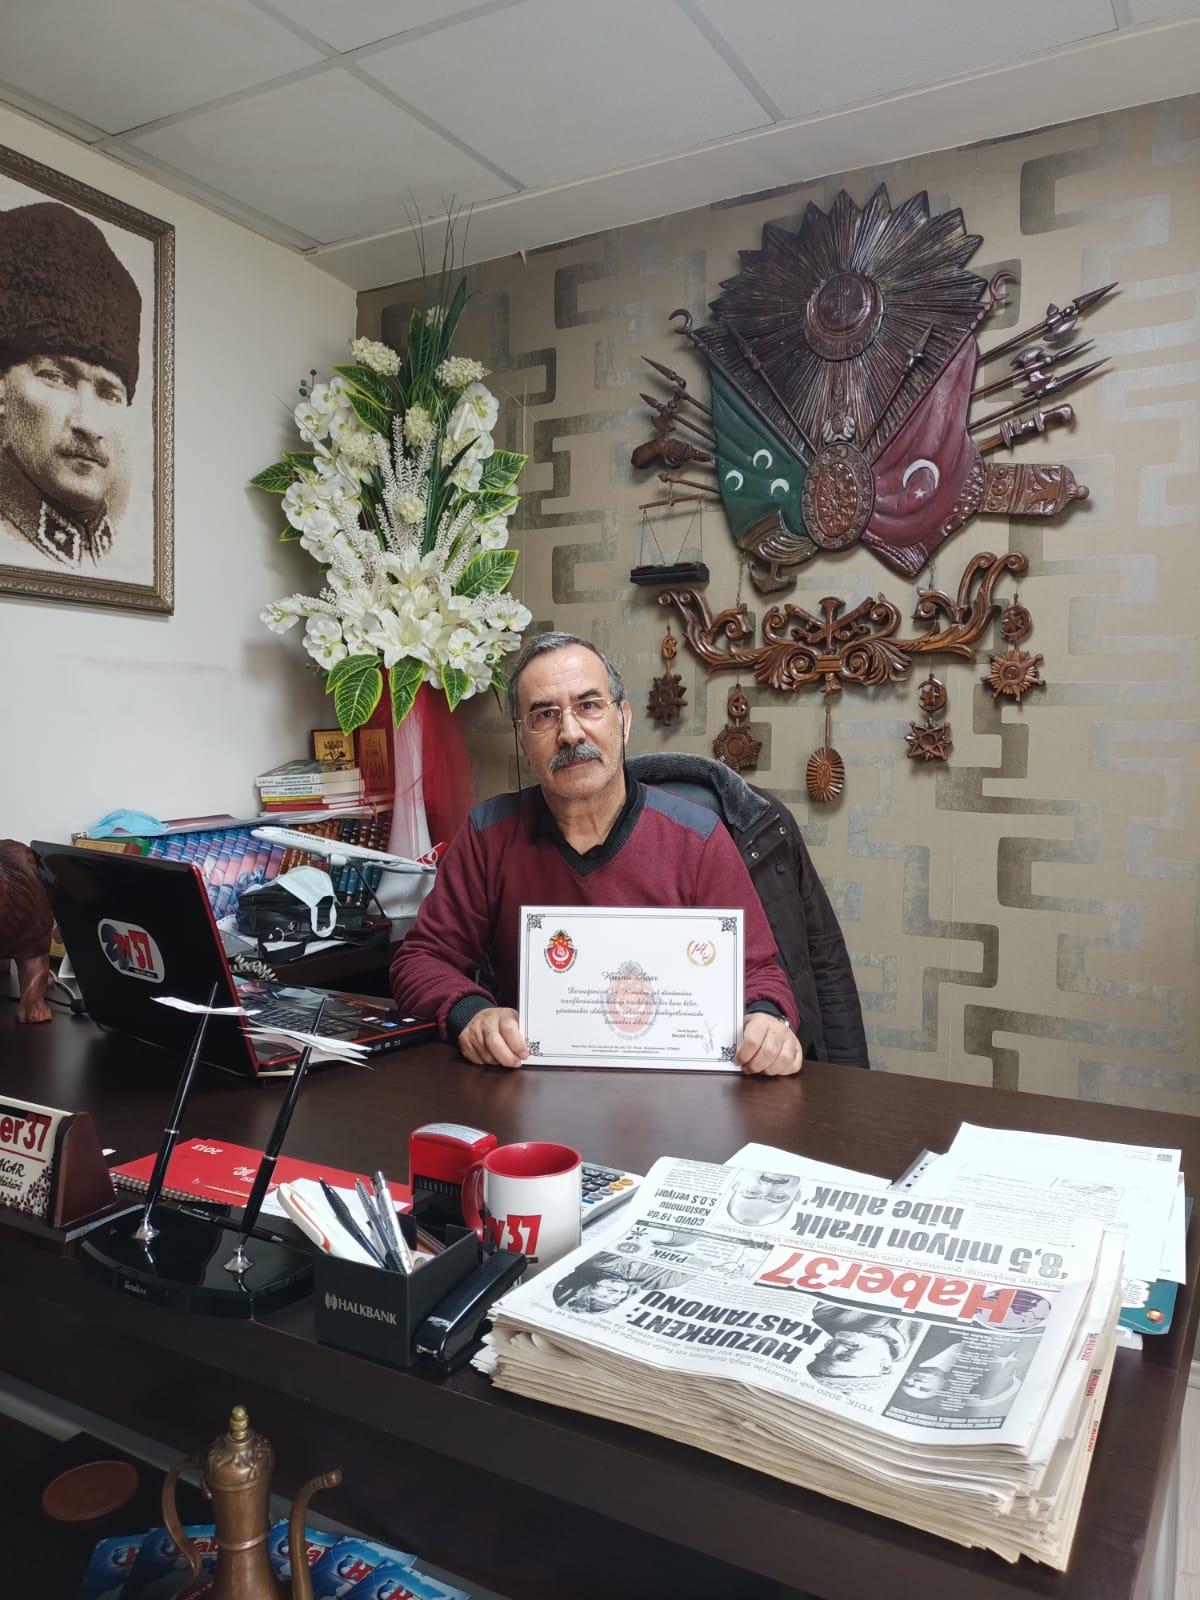 Tosya Haber 37 gazetesinin genel yayın yönetmeni ve sahibi Hüsnü acar.